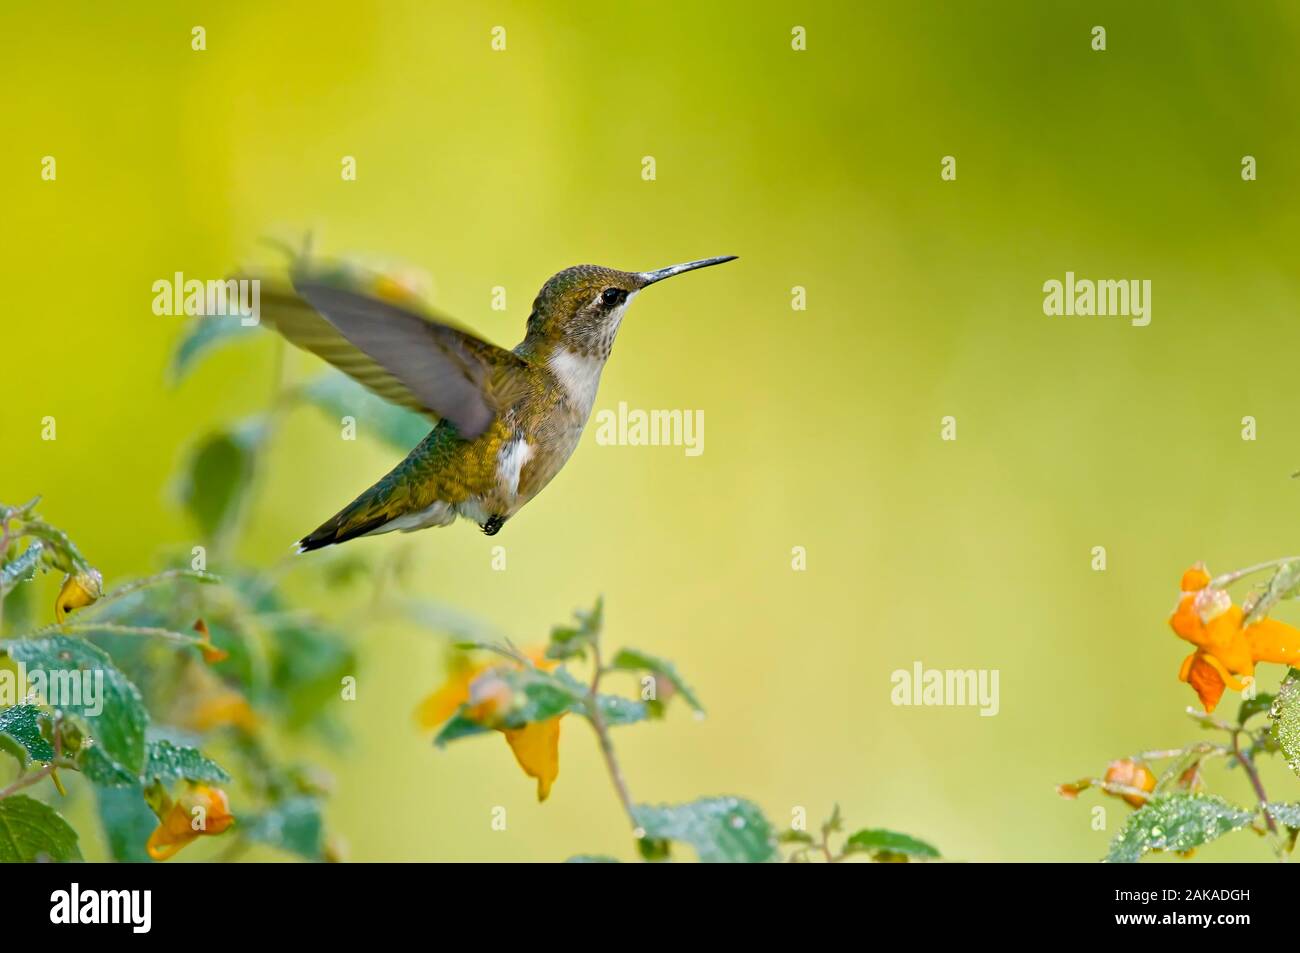 Humming Bird Flying, Stock Photo